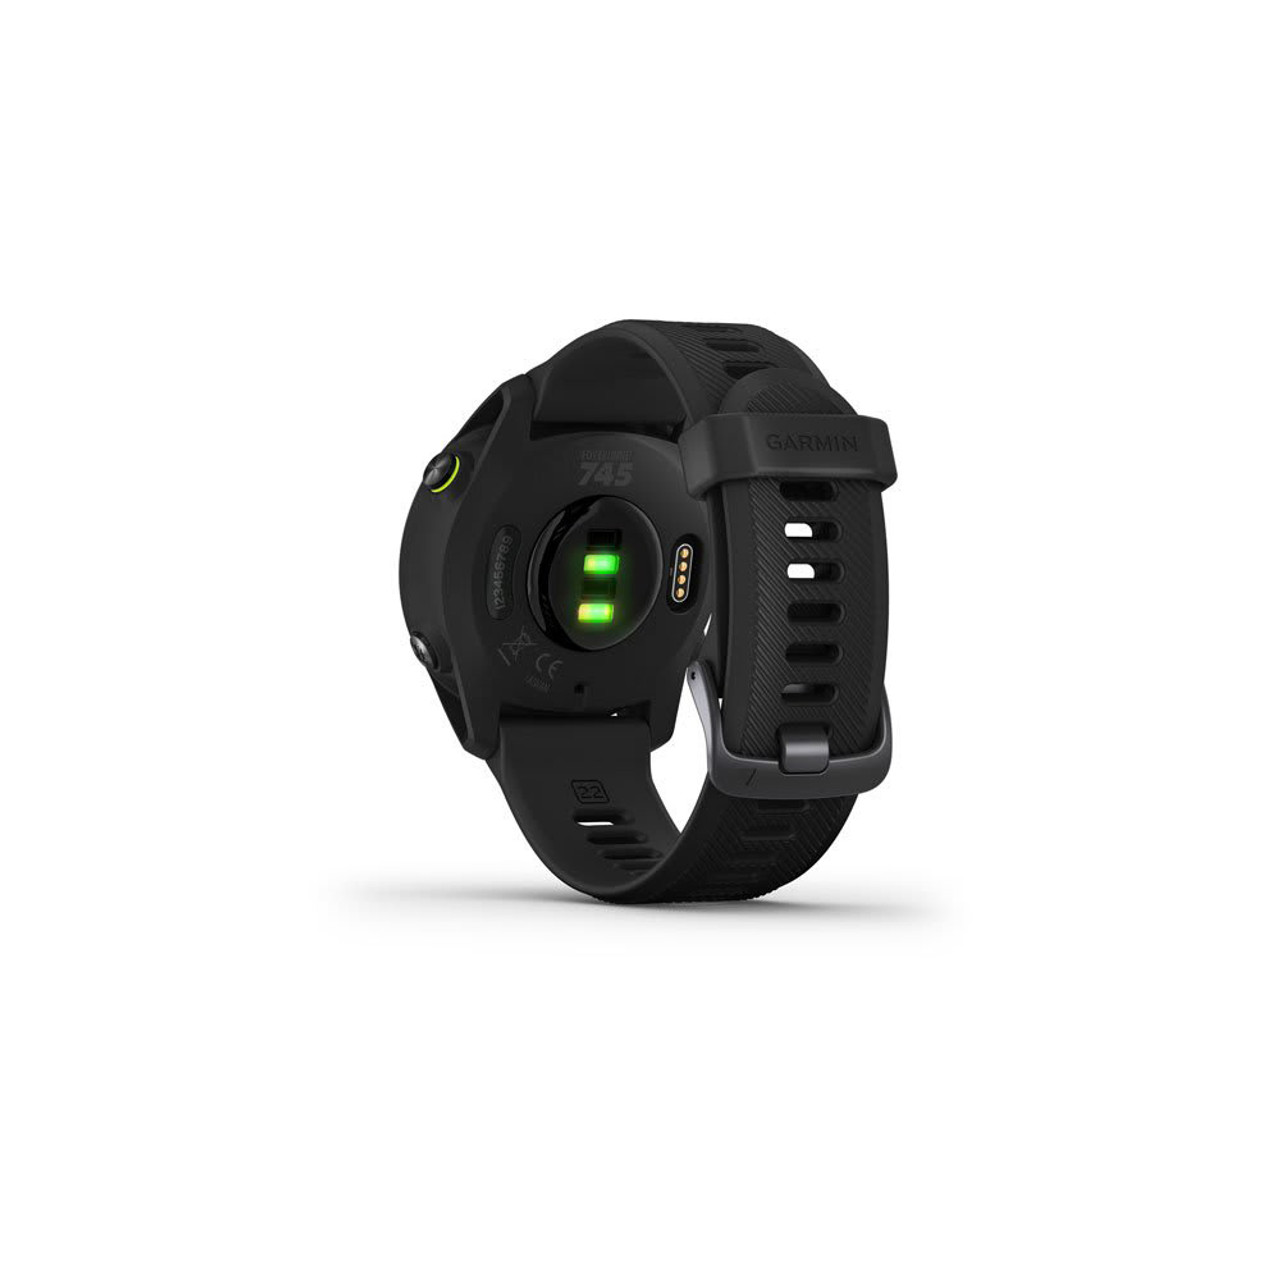 Compra al mejor precio el nuevo Sportwatch Garmin Forerunner 745, GPS